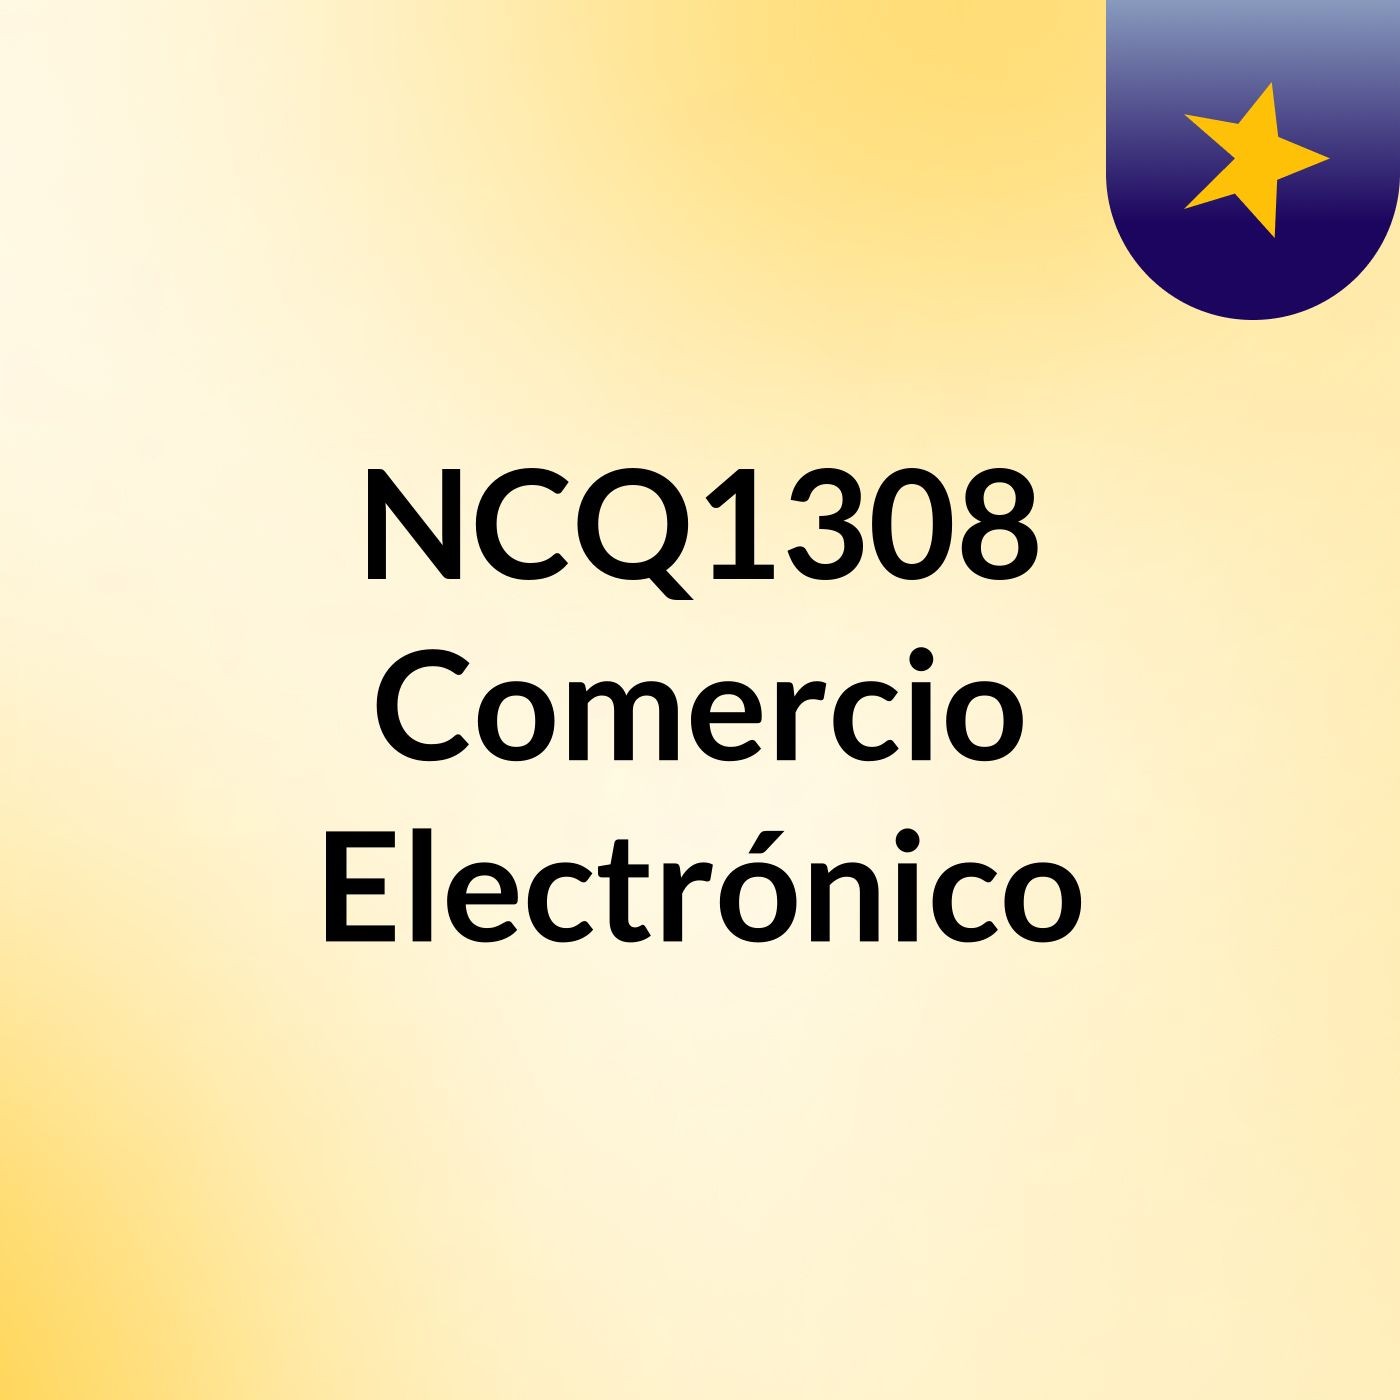 NCQ1308 Comercio Electrónico